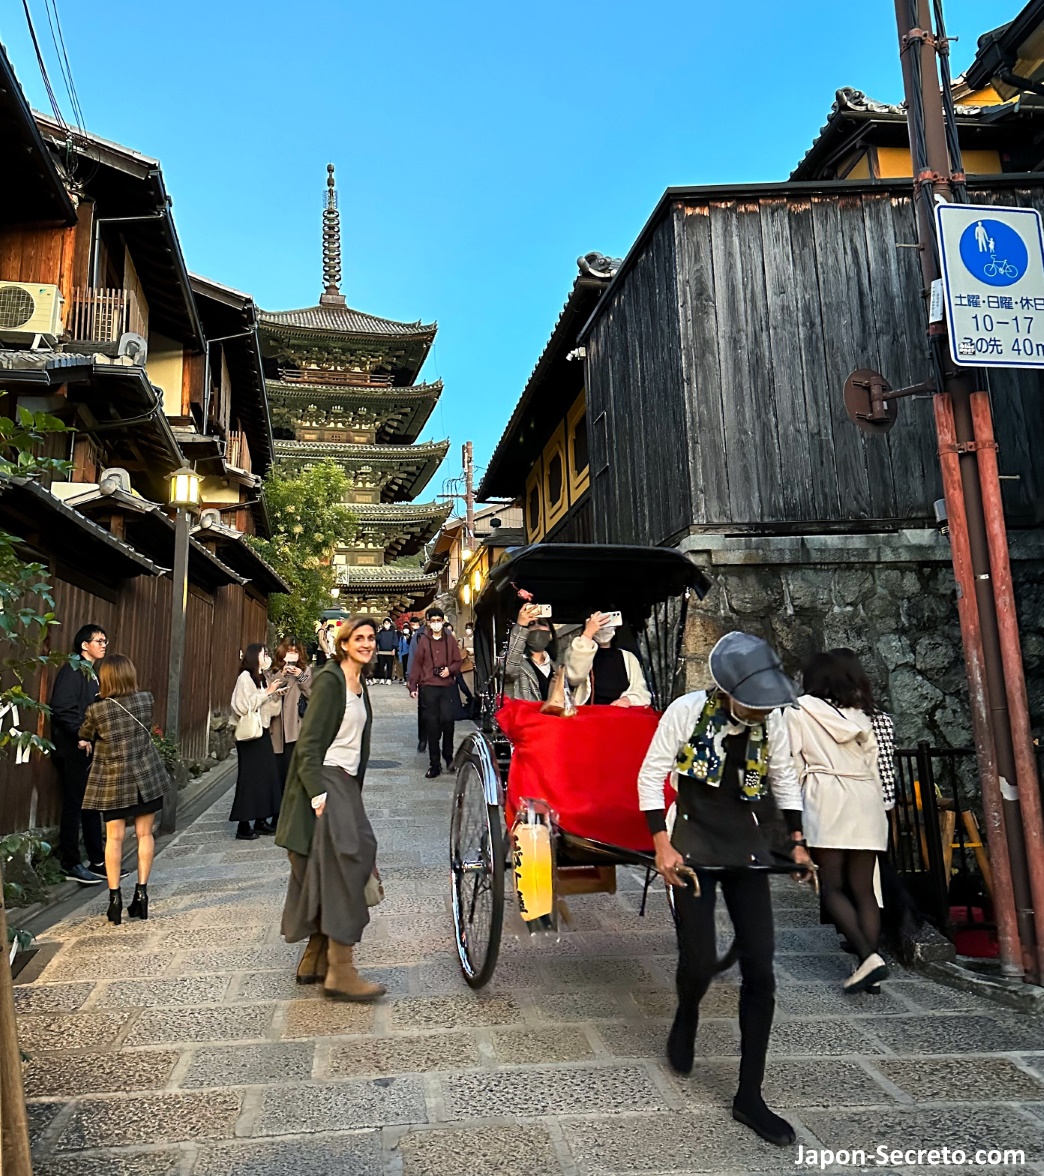 Jinrikisha (rickshaw) bajando por una callejuela del barrio de Higashiyama (Kioto) con la pagoda Yasaka al fondo